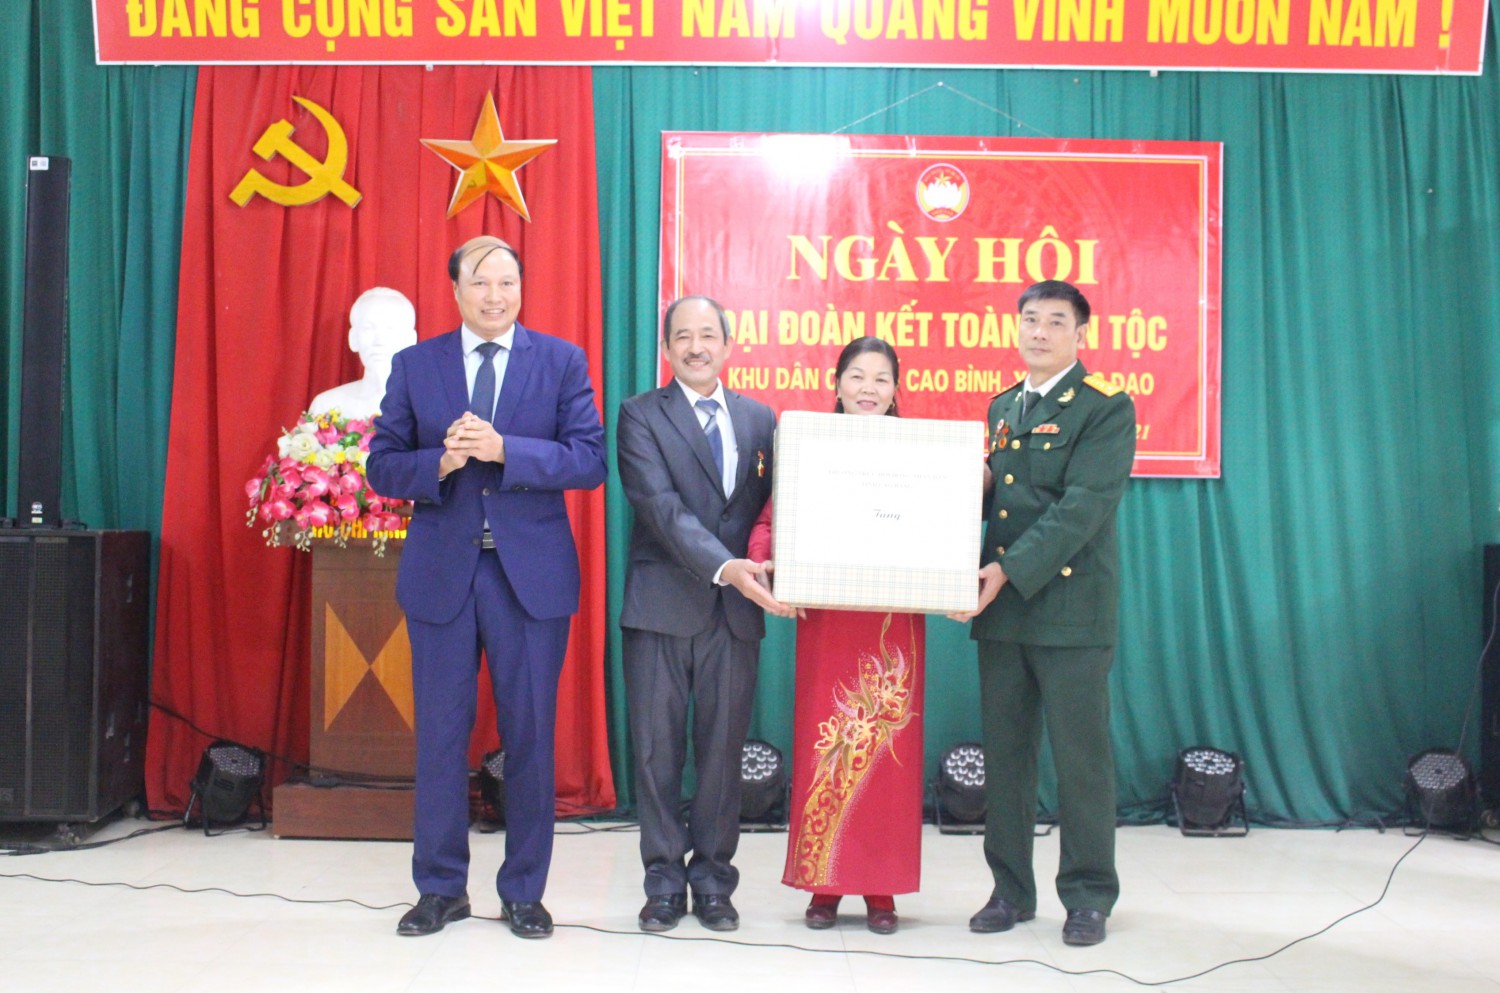 Phó Chủ tịch HĐND tỉnh Hoàng Văn Thạch tặng quà khu dân cư phố Cao Bình, xã Hưng Đạo